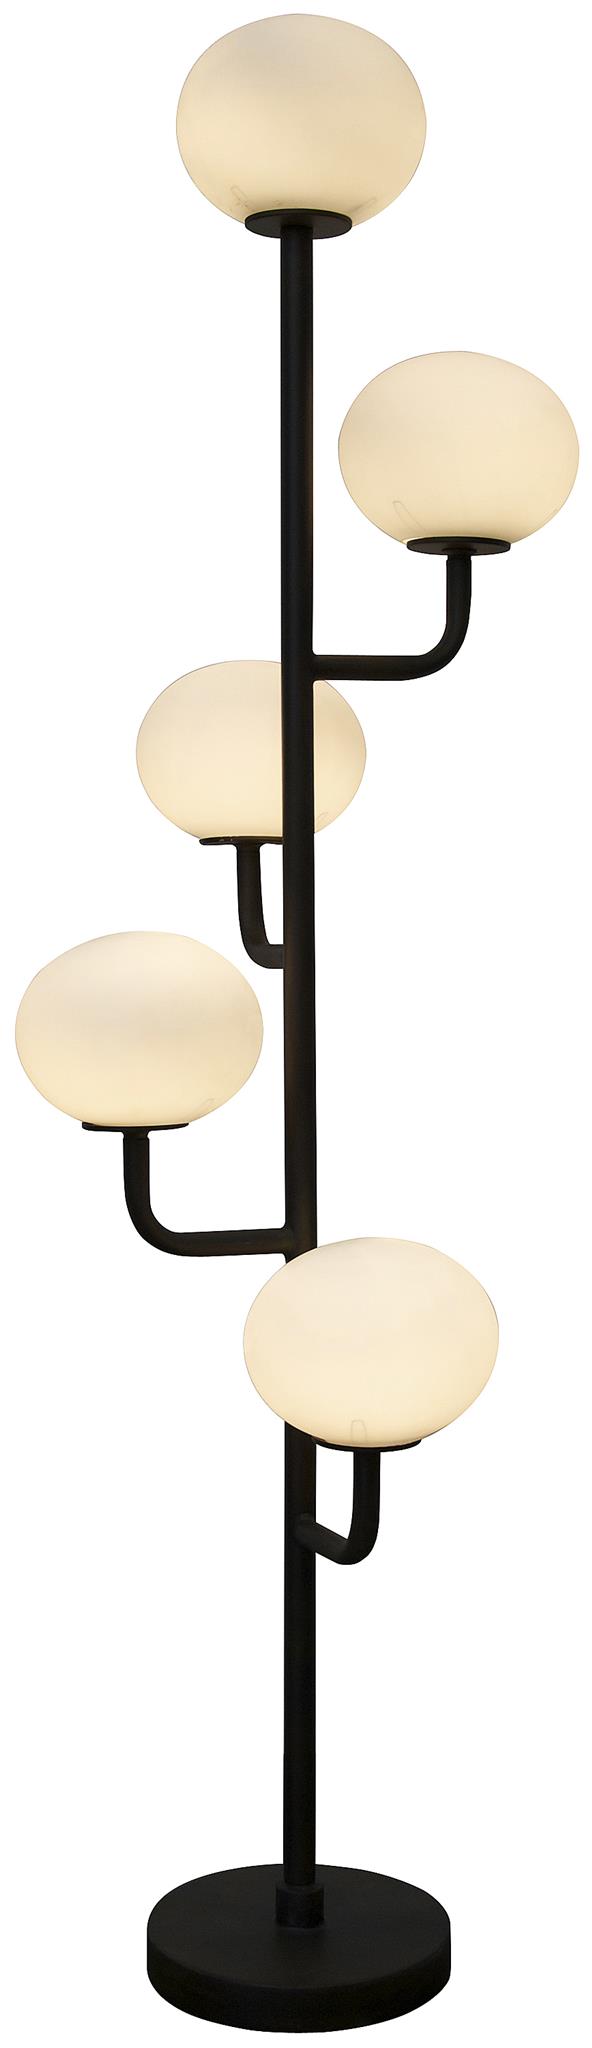 Lamp 480